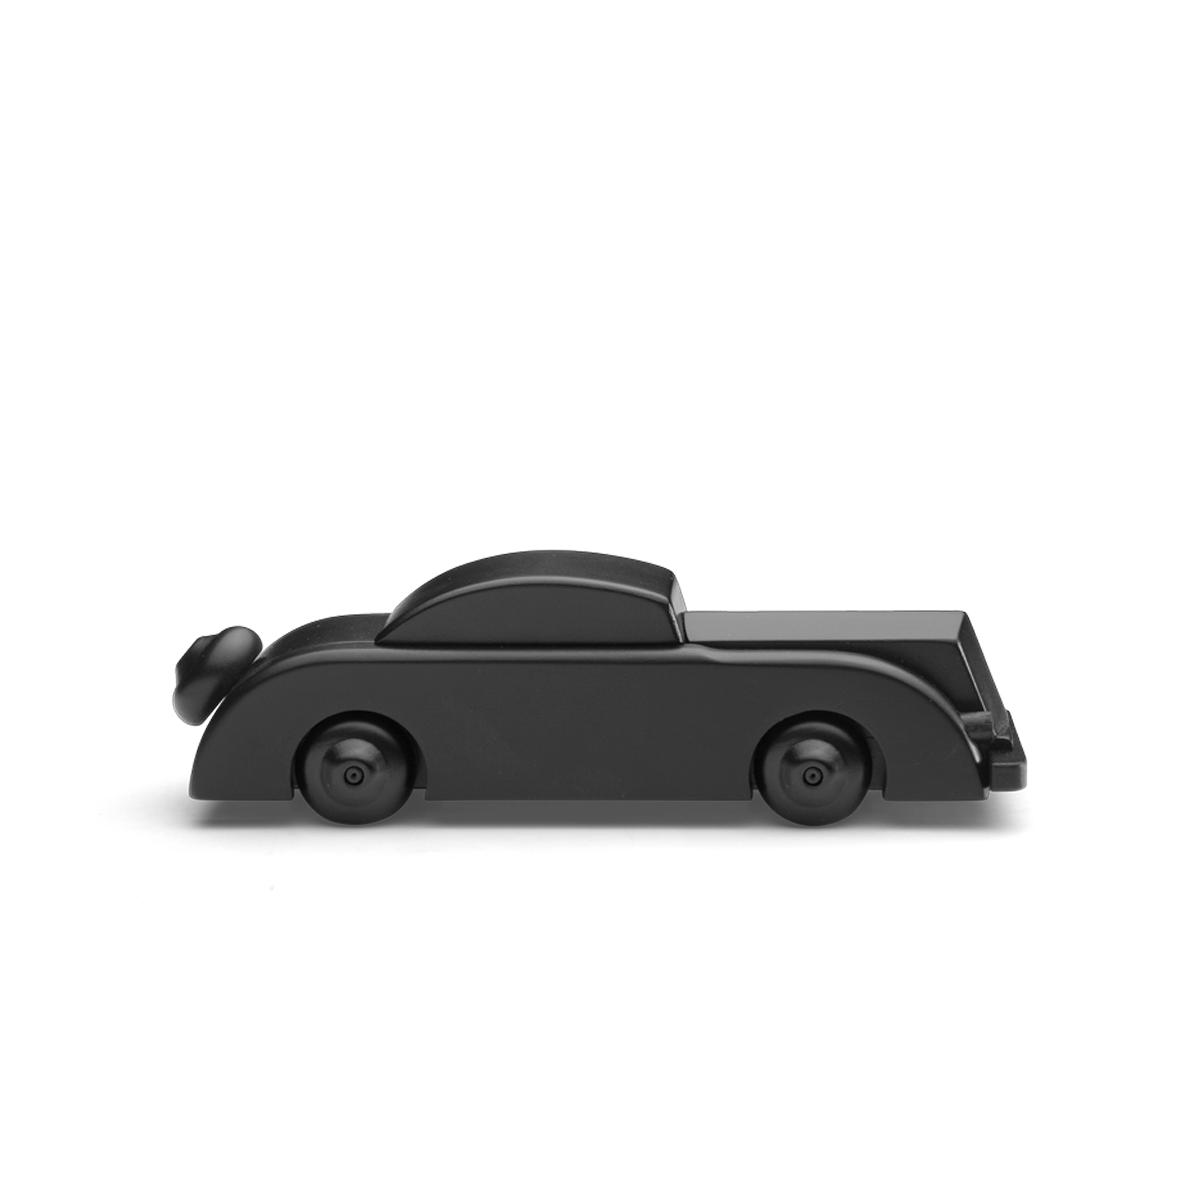 Kay Bojesen Wooden Small Black Limousine